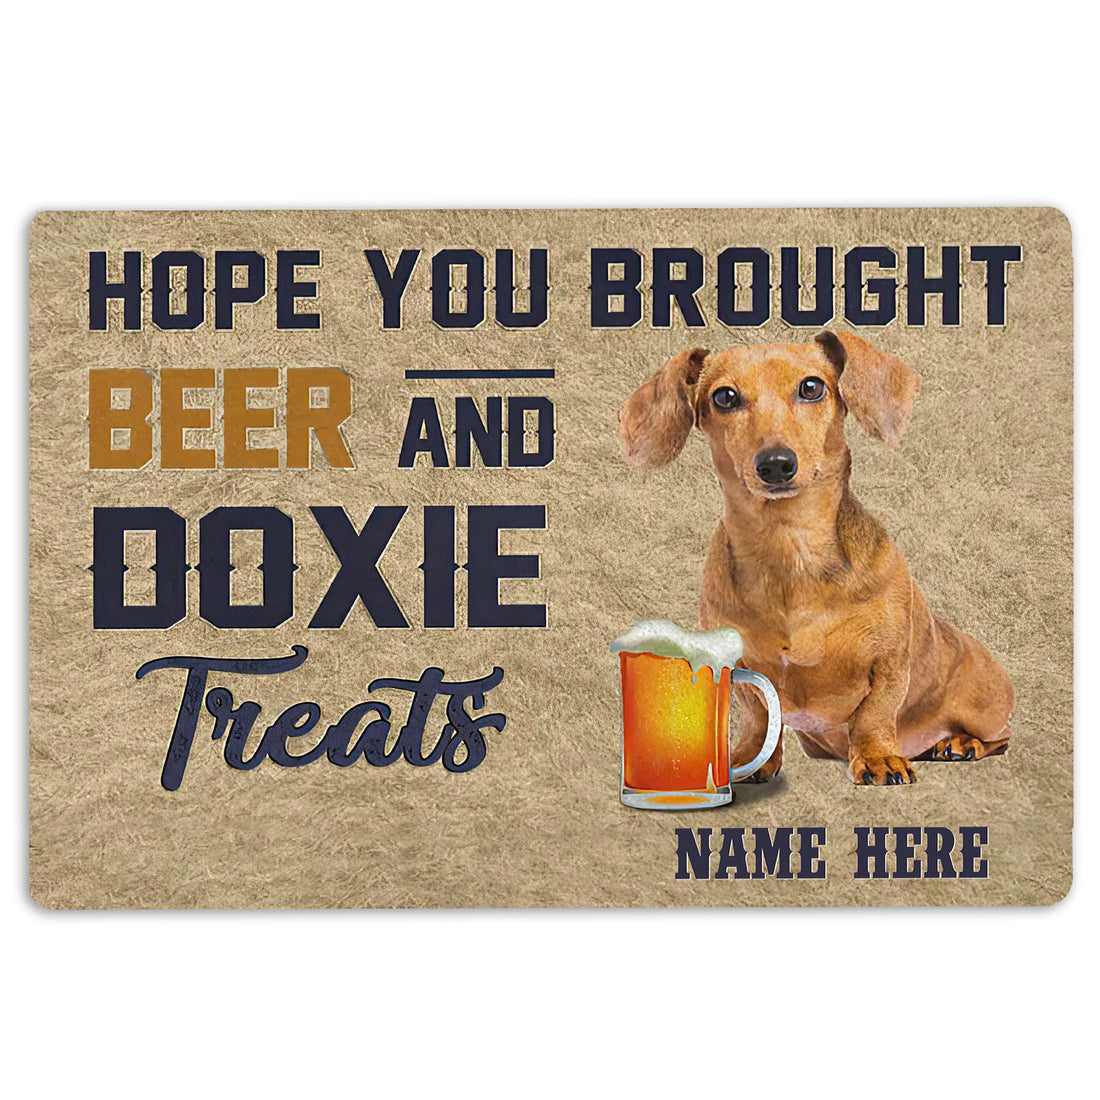 Ohaprints-Doormat-Outdoor-Indoor-Brought-Beer-And-Doxie-Treat-Custom-Personalized-Name-Rubber-Door-Mat-1968-18'' x 30''